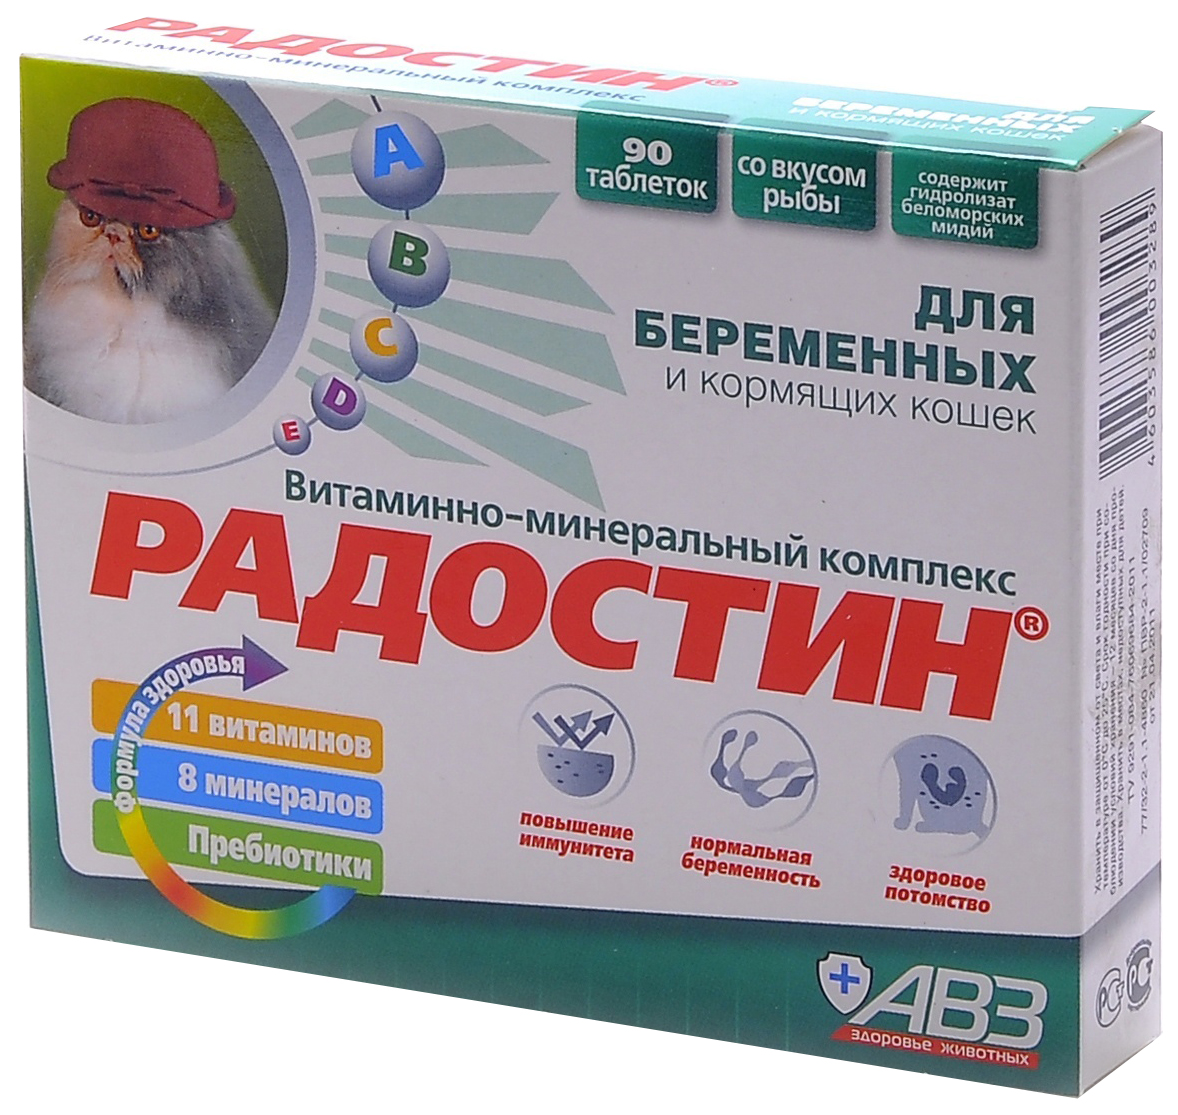 Витаминно-минеральный комплекс для беременных и кормящих кошек АВЗ Радостин, 90 табл